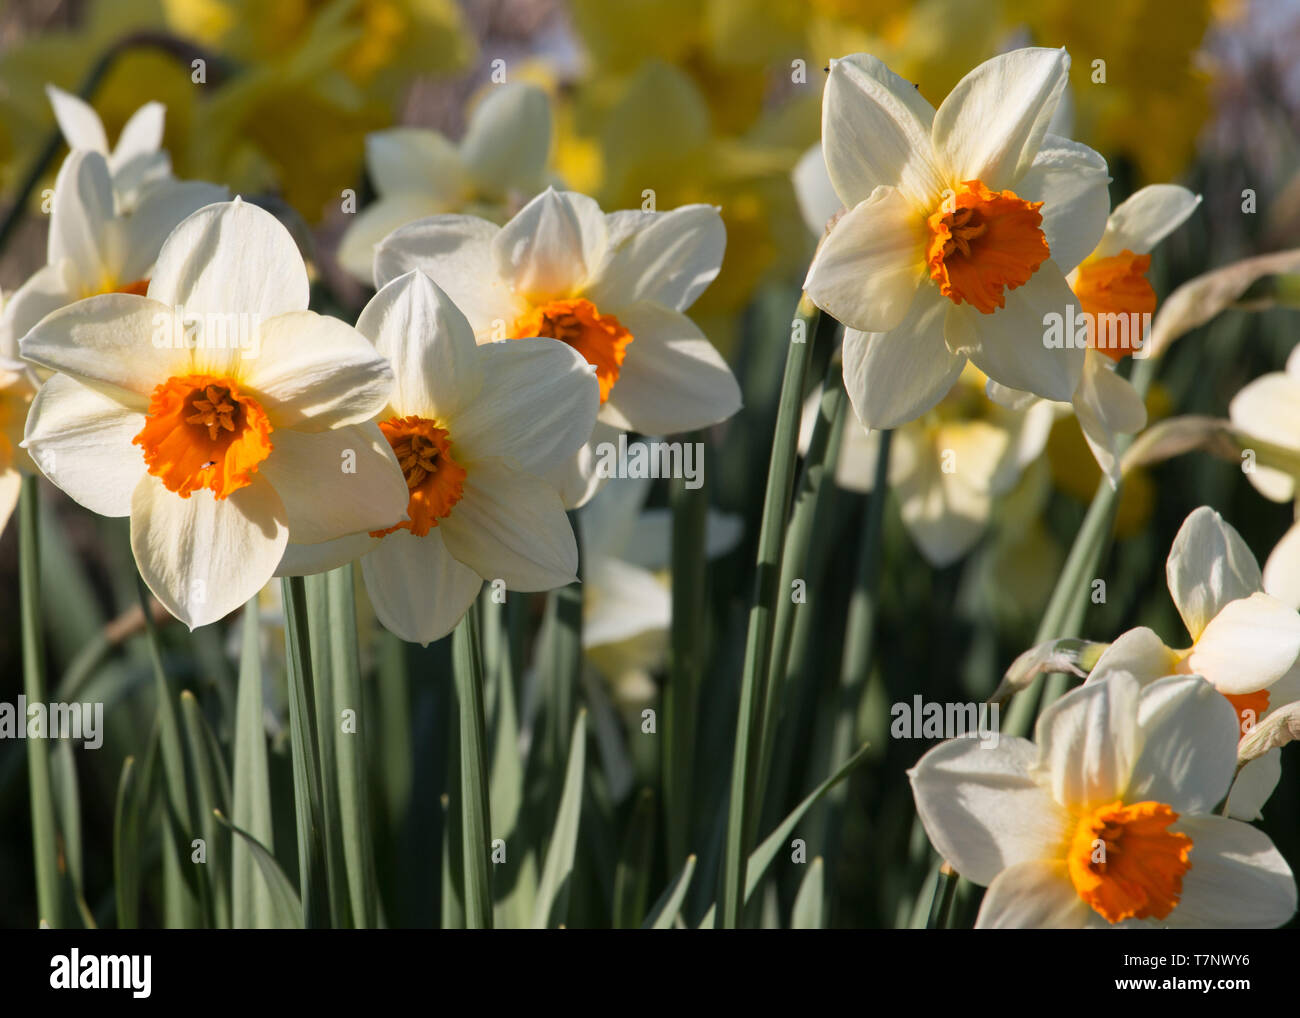 Un groupe de blanc et orange bicolore, jonquilles, narcisses, la floraison  dans le soleil du printemps Photo Stock - Alamy